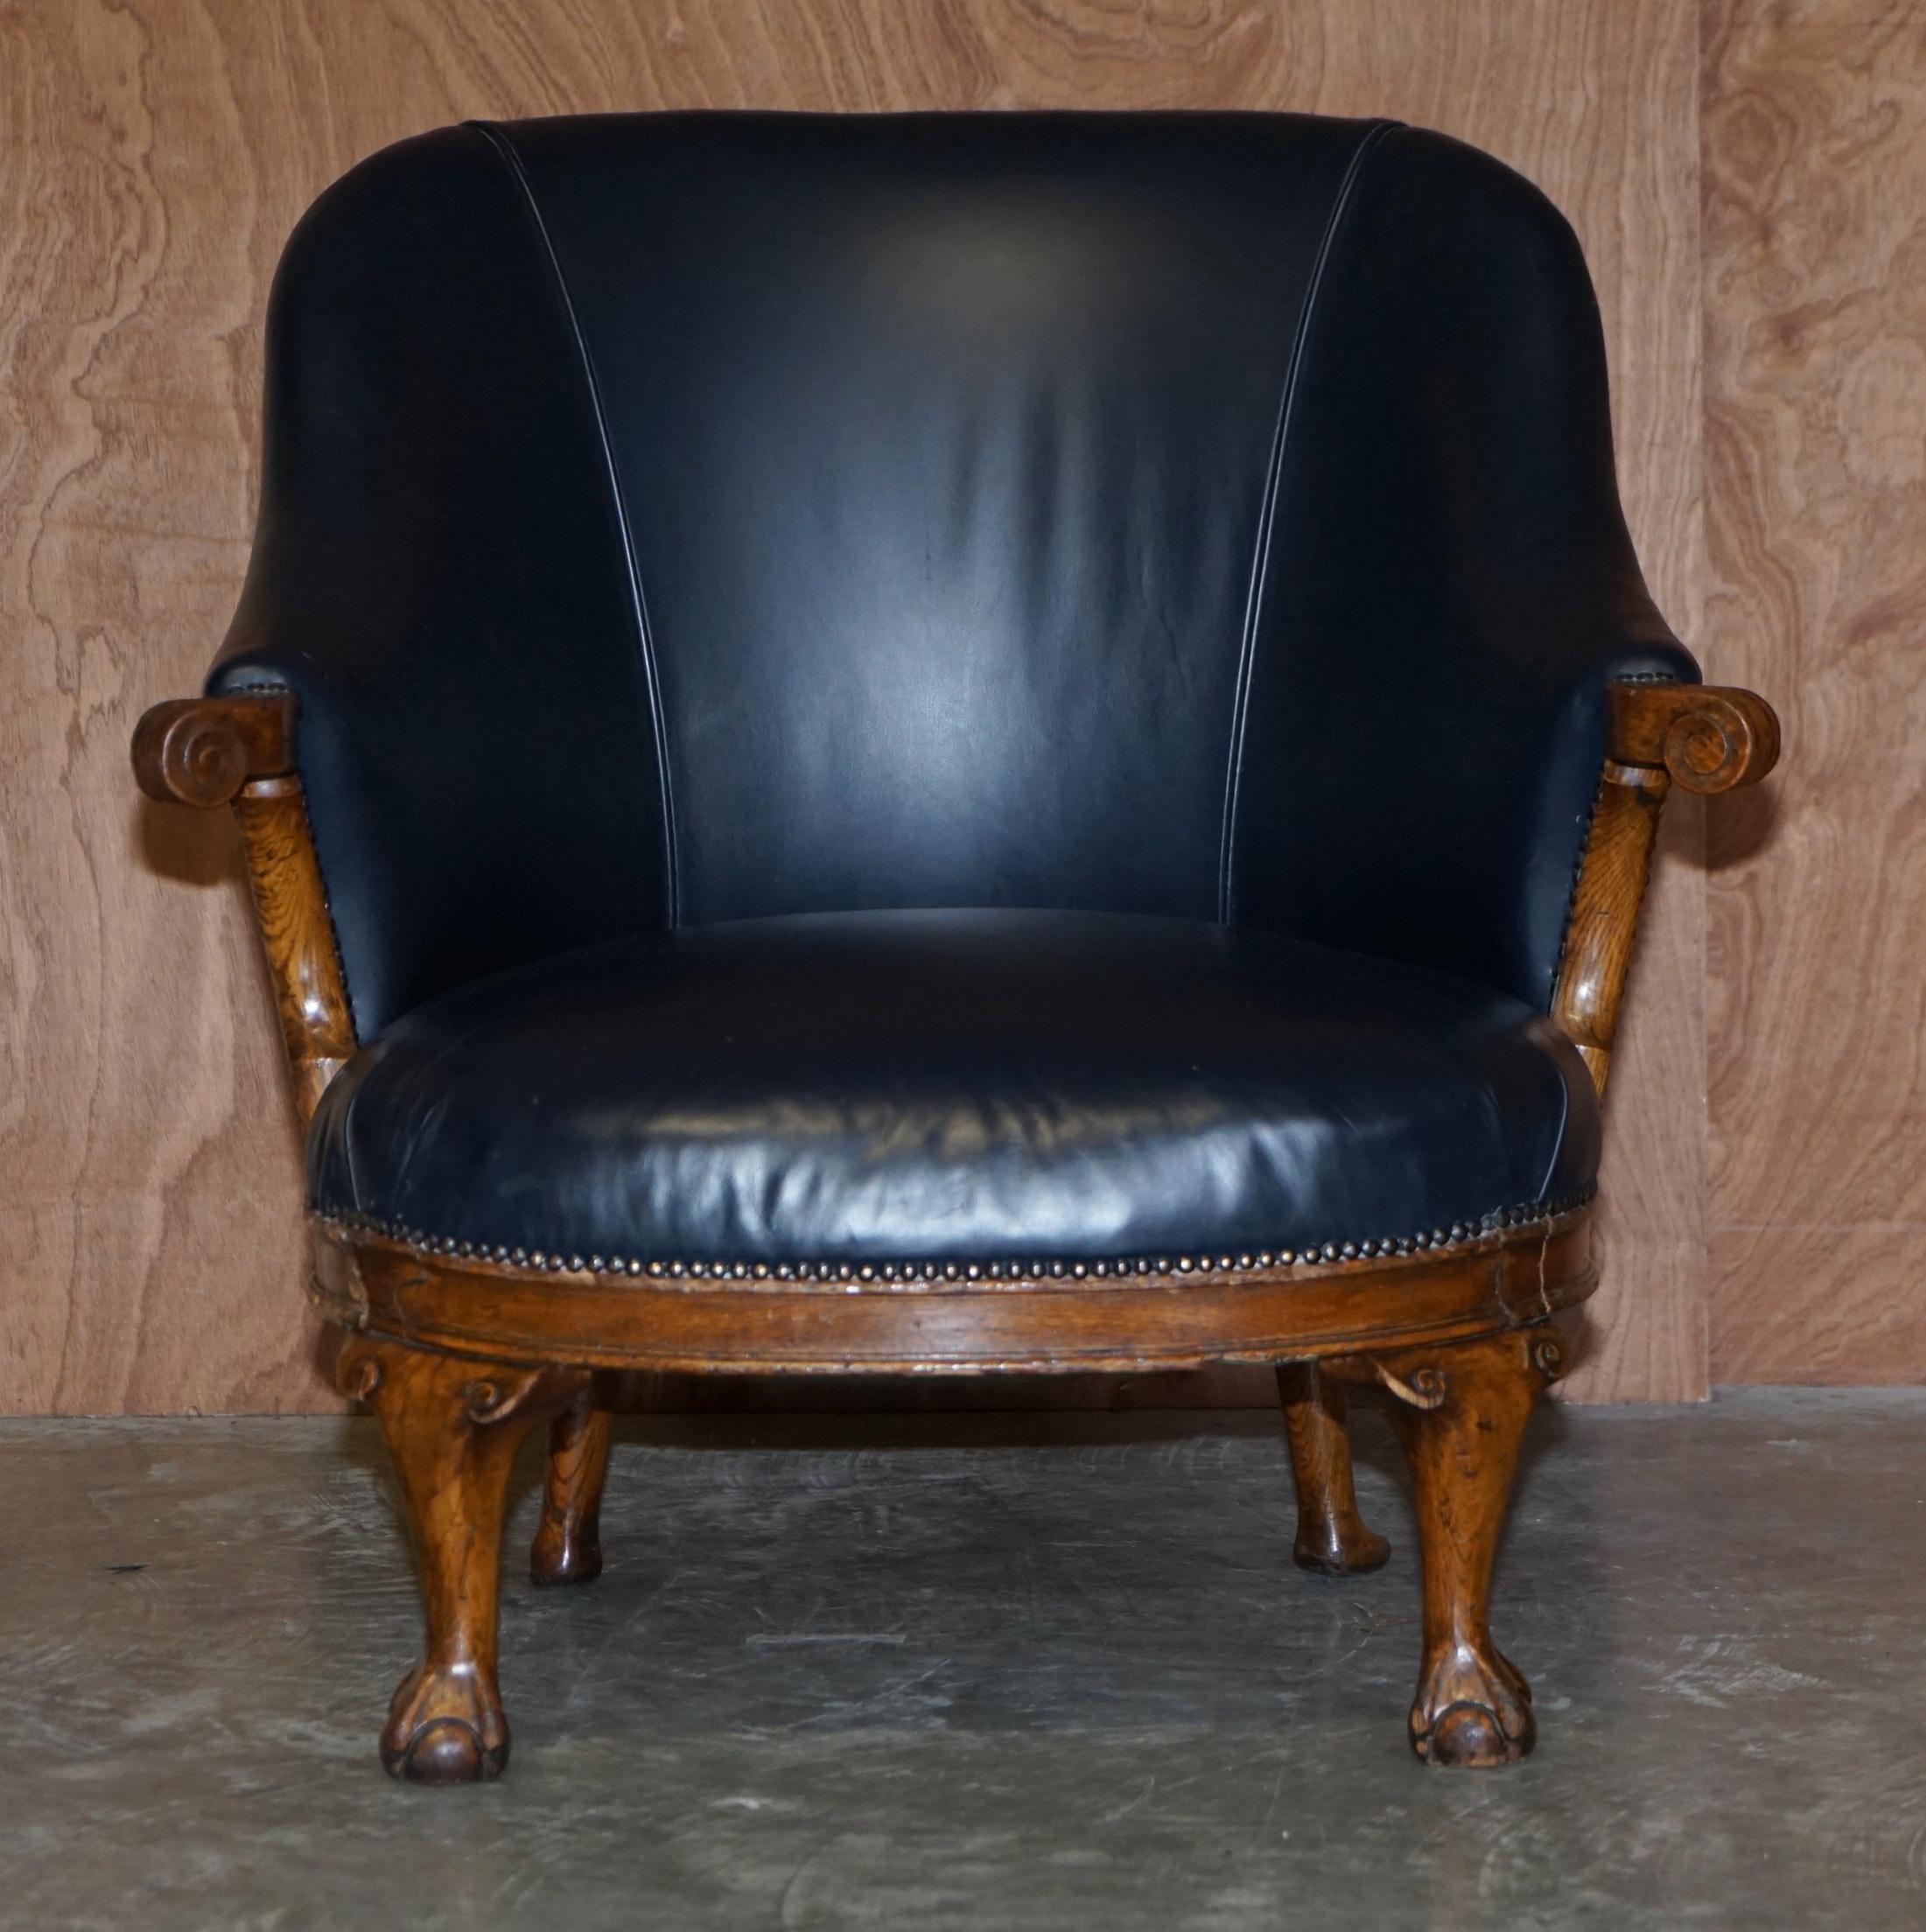 Wir freuen uns, diesen schönen, in England handgefertigten Regency-Sessel aus Eichenholz mit königsblauem Lederbezug anbieten zu können (ca. 1810-1820)

Ein sehr gut aussehendes und dekoratives Stück, in Wahrheit habe ich seit einiger Zeit keinen